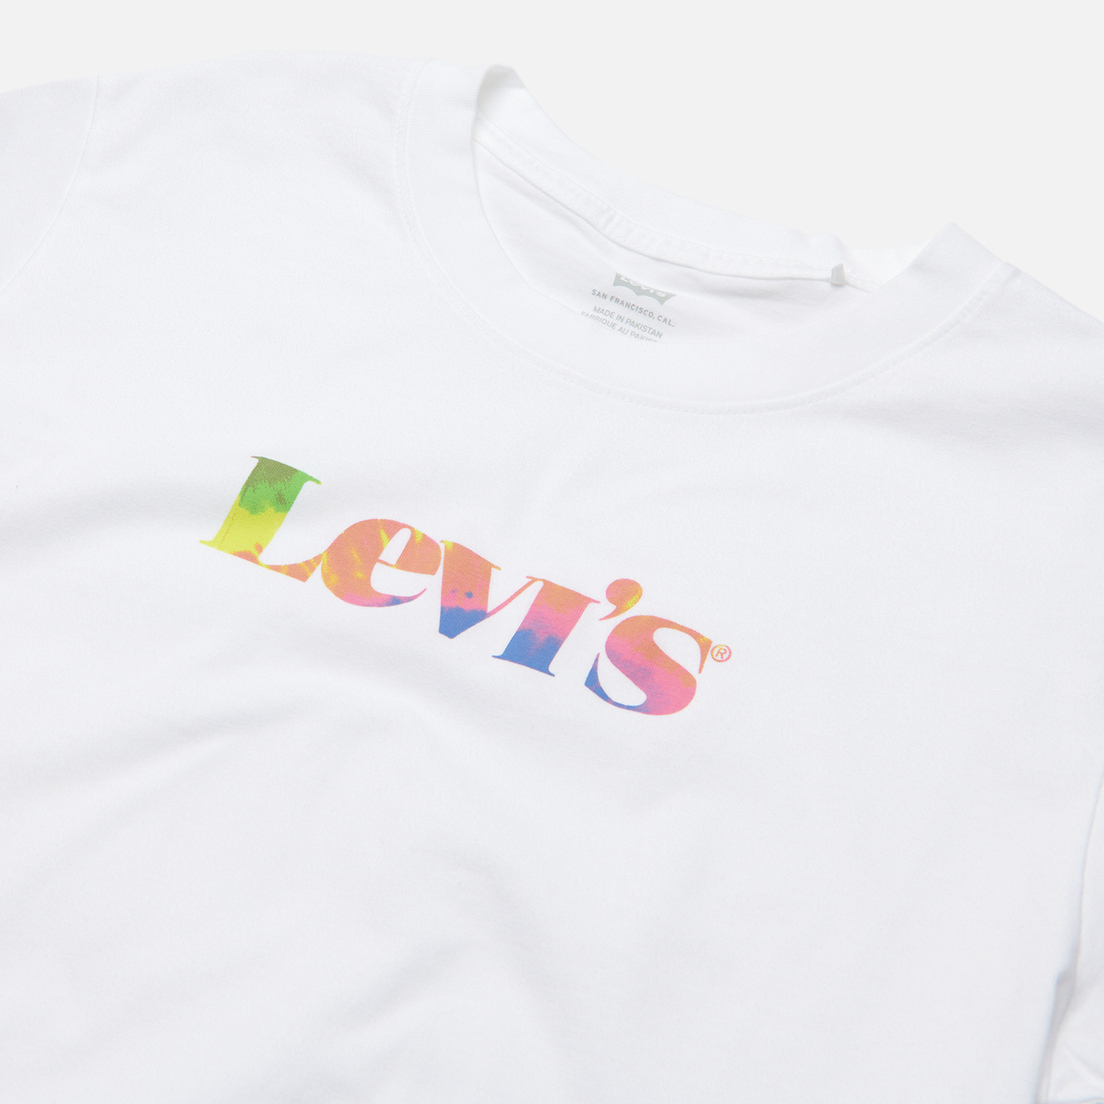 Levi's Женская футболка Graphic Varsity